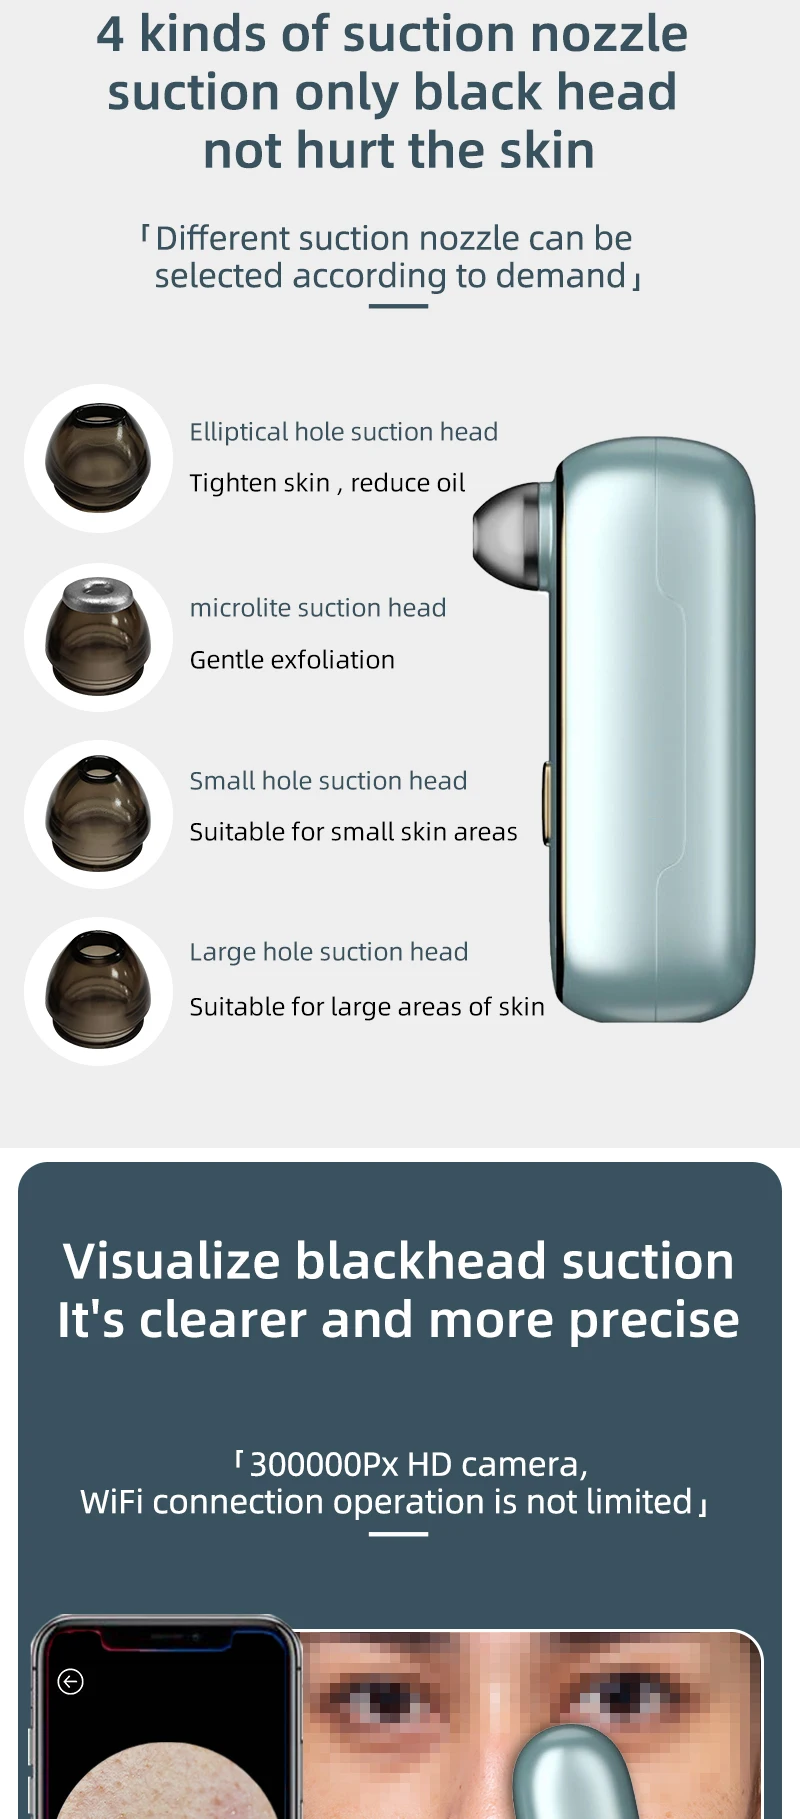 skin spatula blackhead remover pore cleaner --Visible vacuum blackhead remover with 300,000 cameras - electric blackhead remover